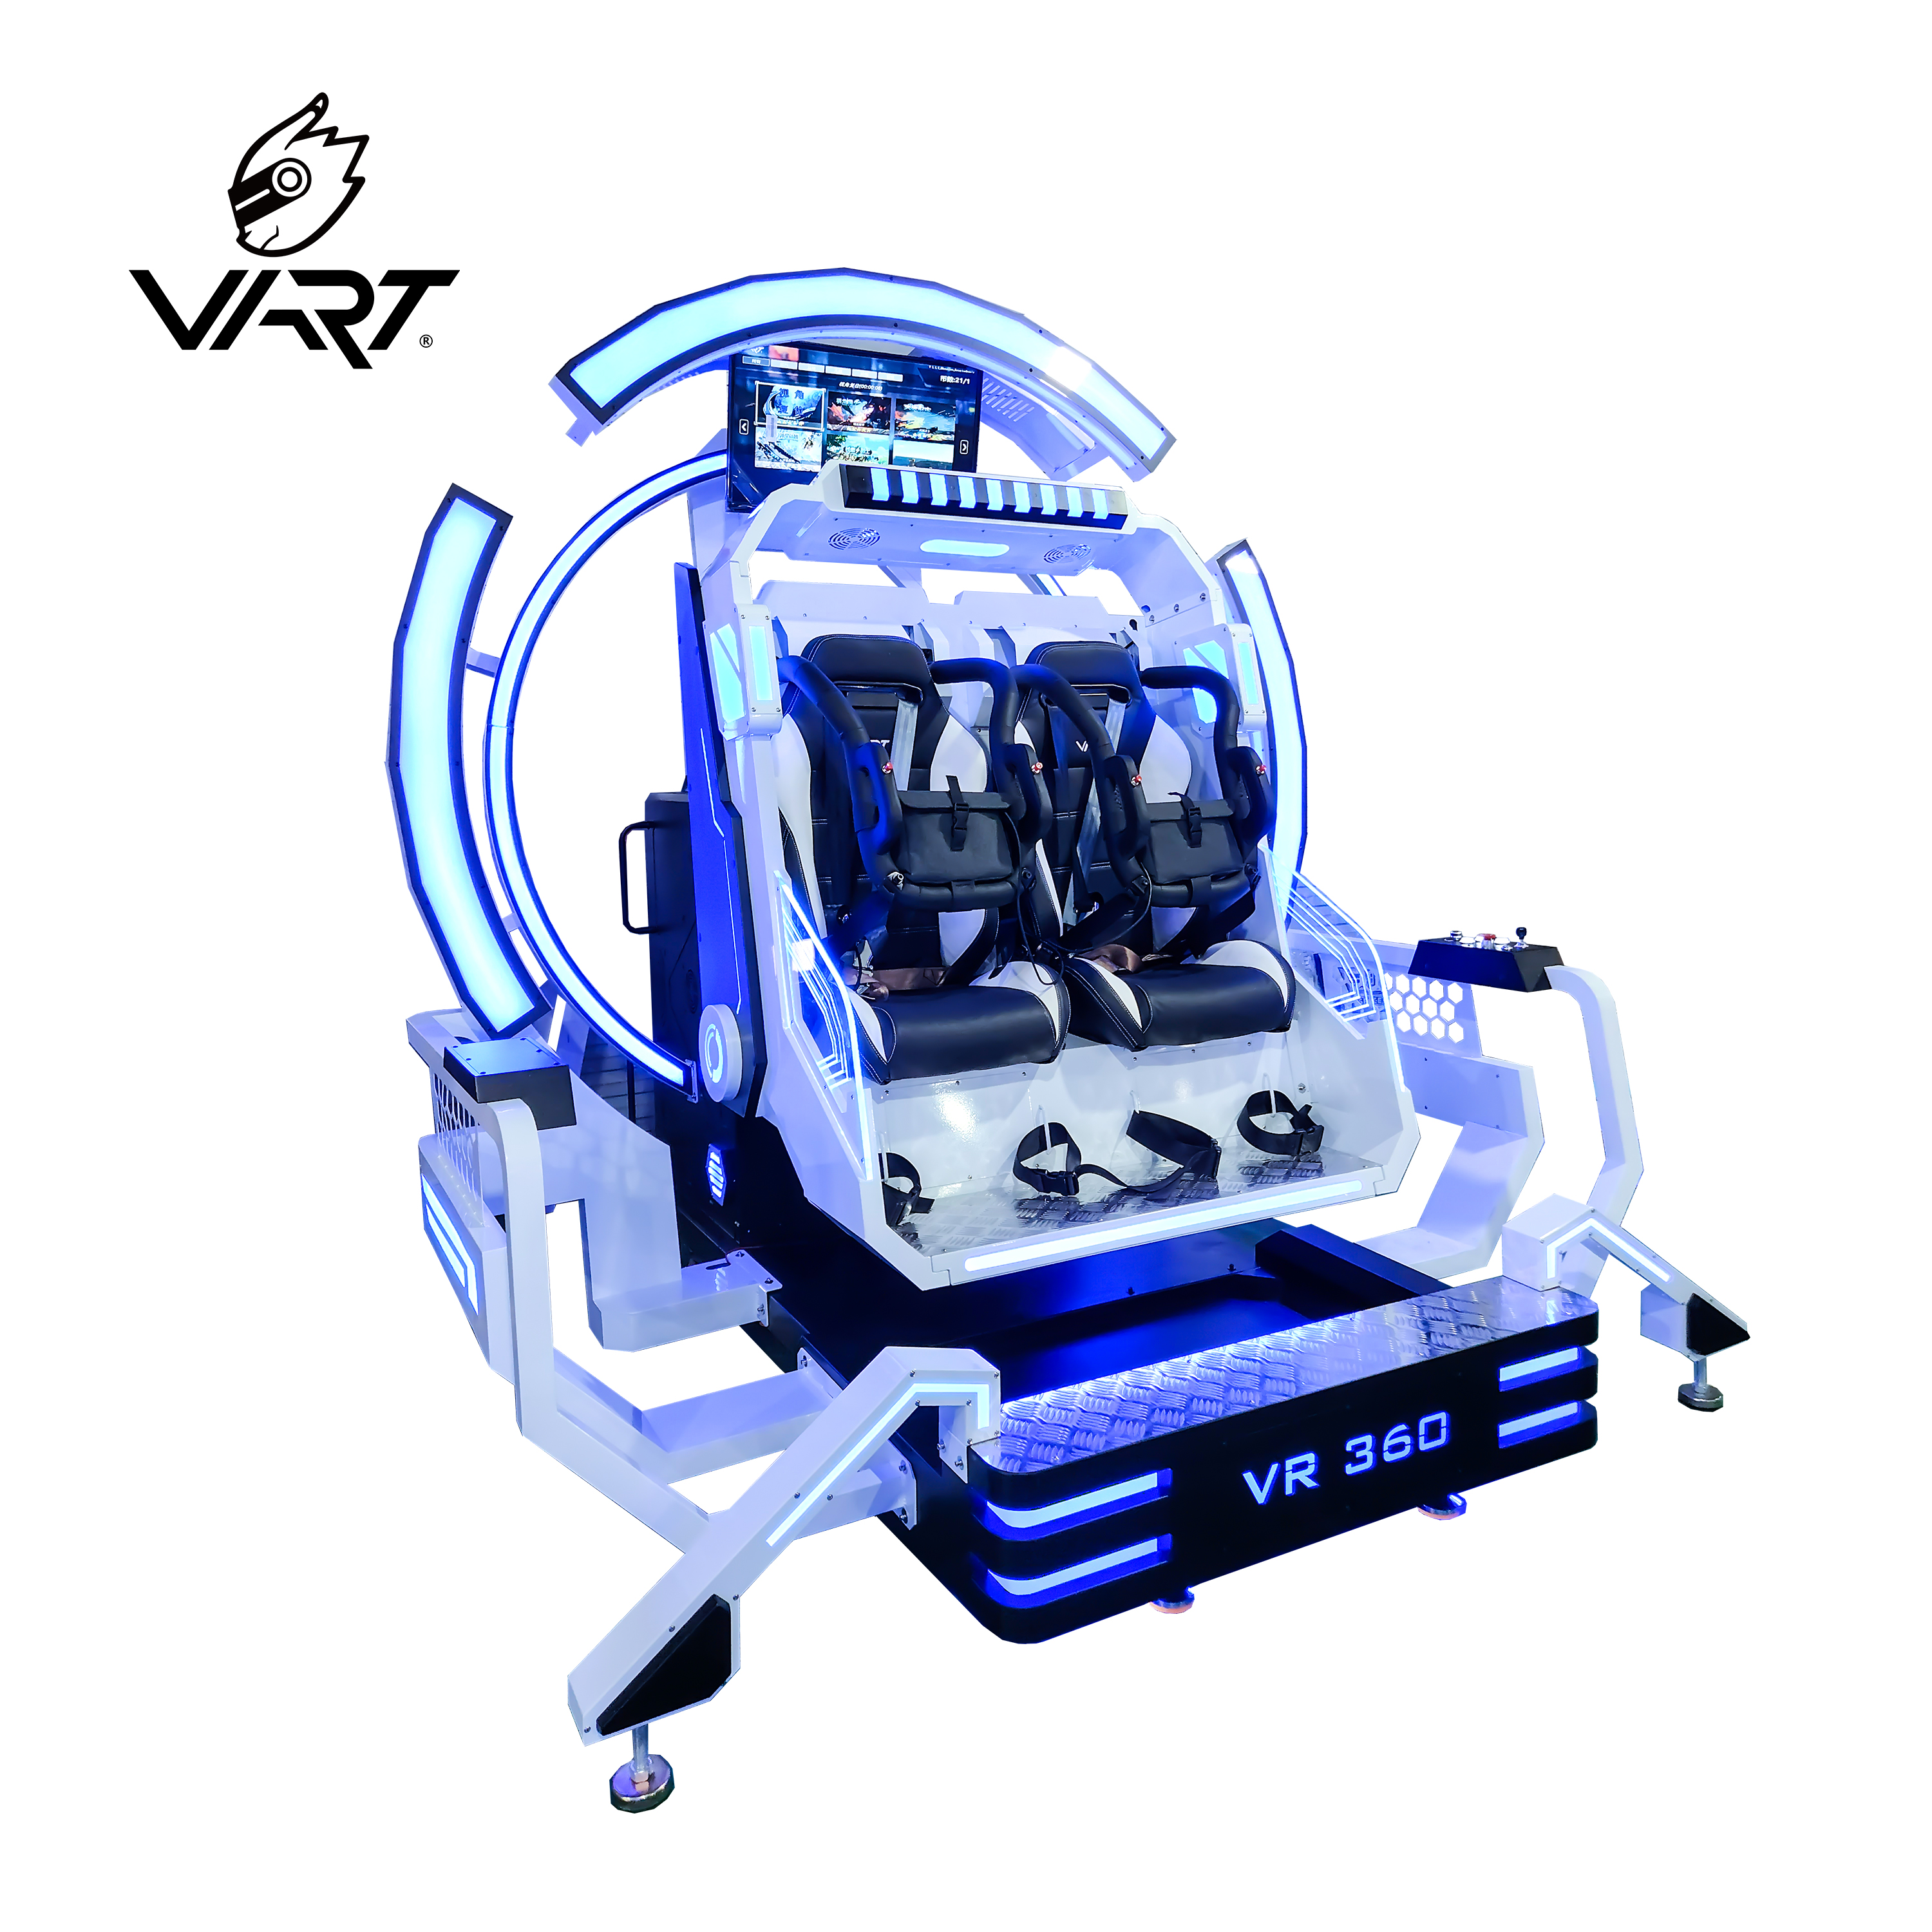 Lågt pris för 9d Vr 360 Degree Headtracking Roller Coaster Simulator Plus Virtual Reality Vibration 9d Cinema Utvald bild